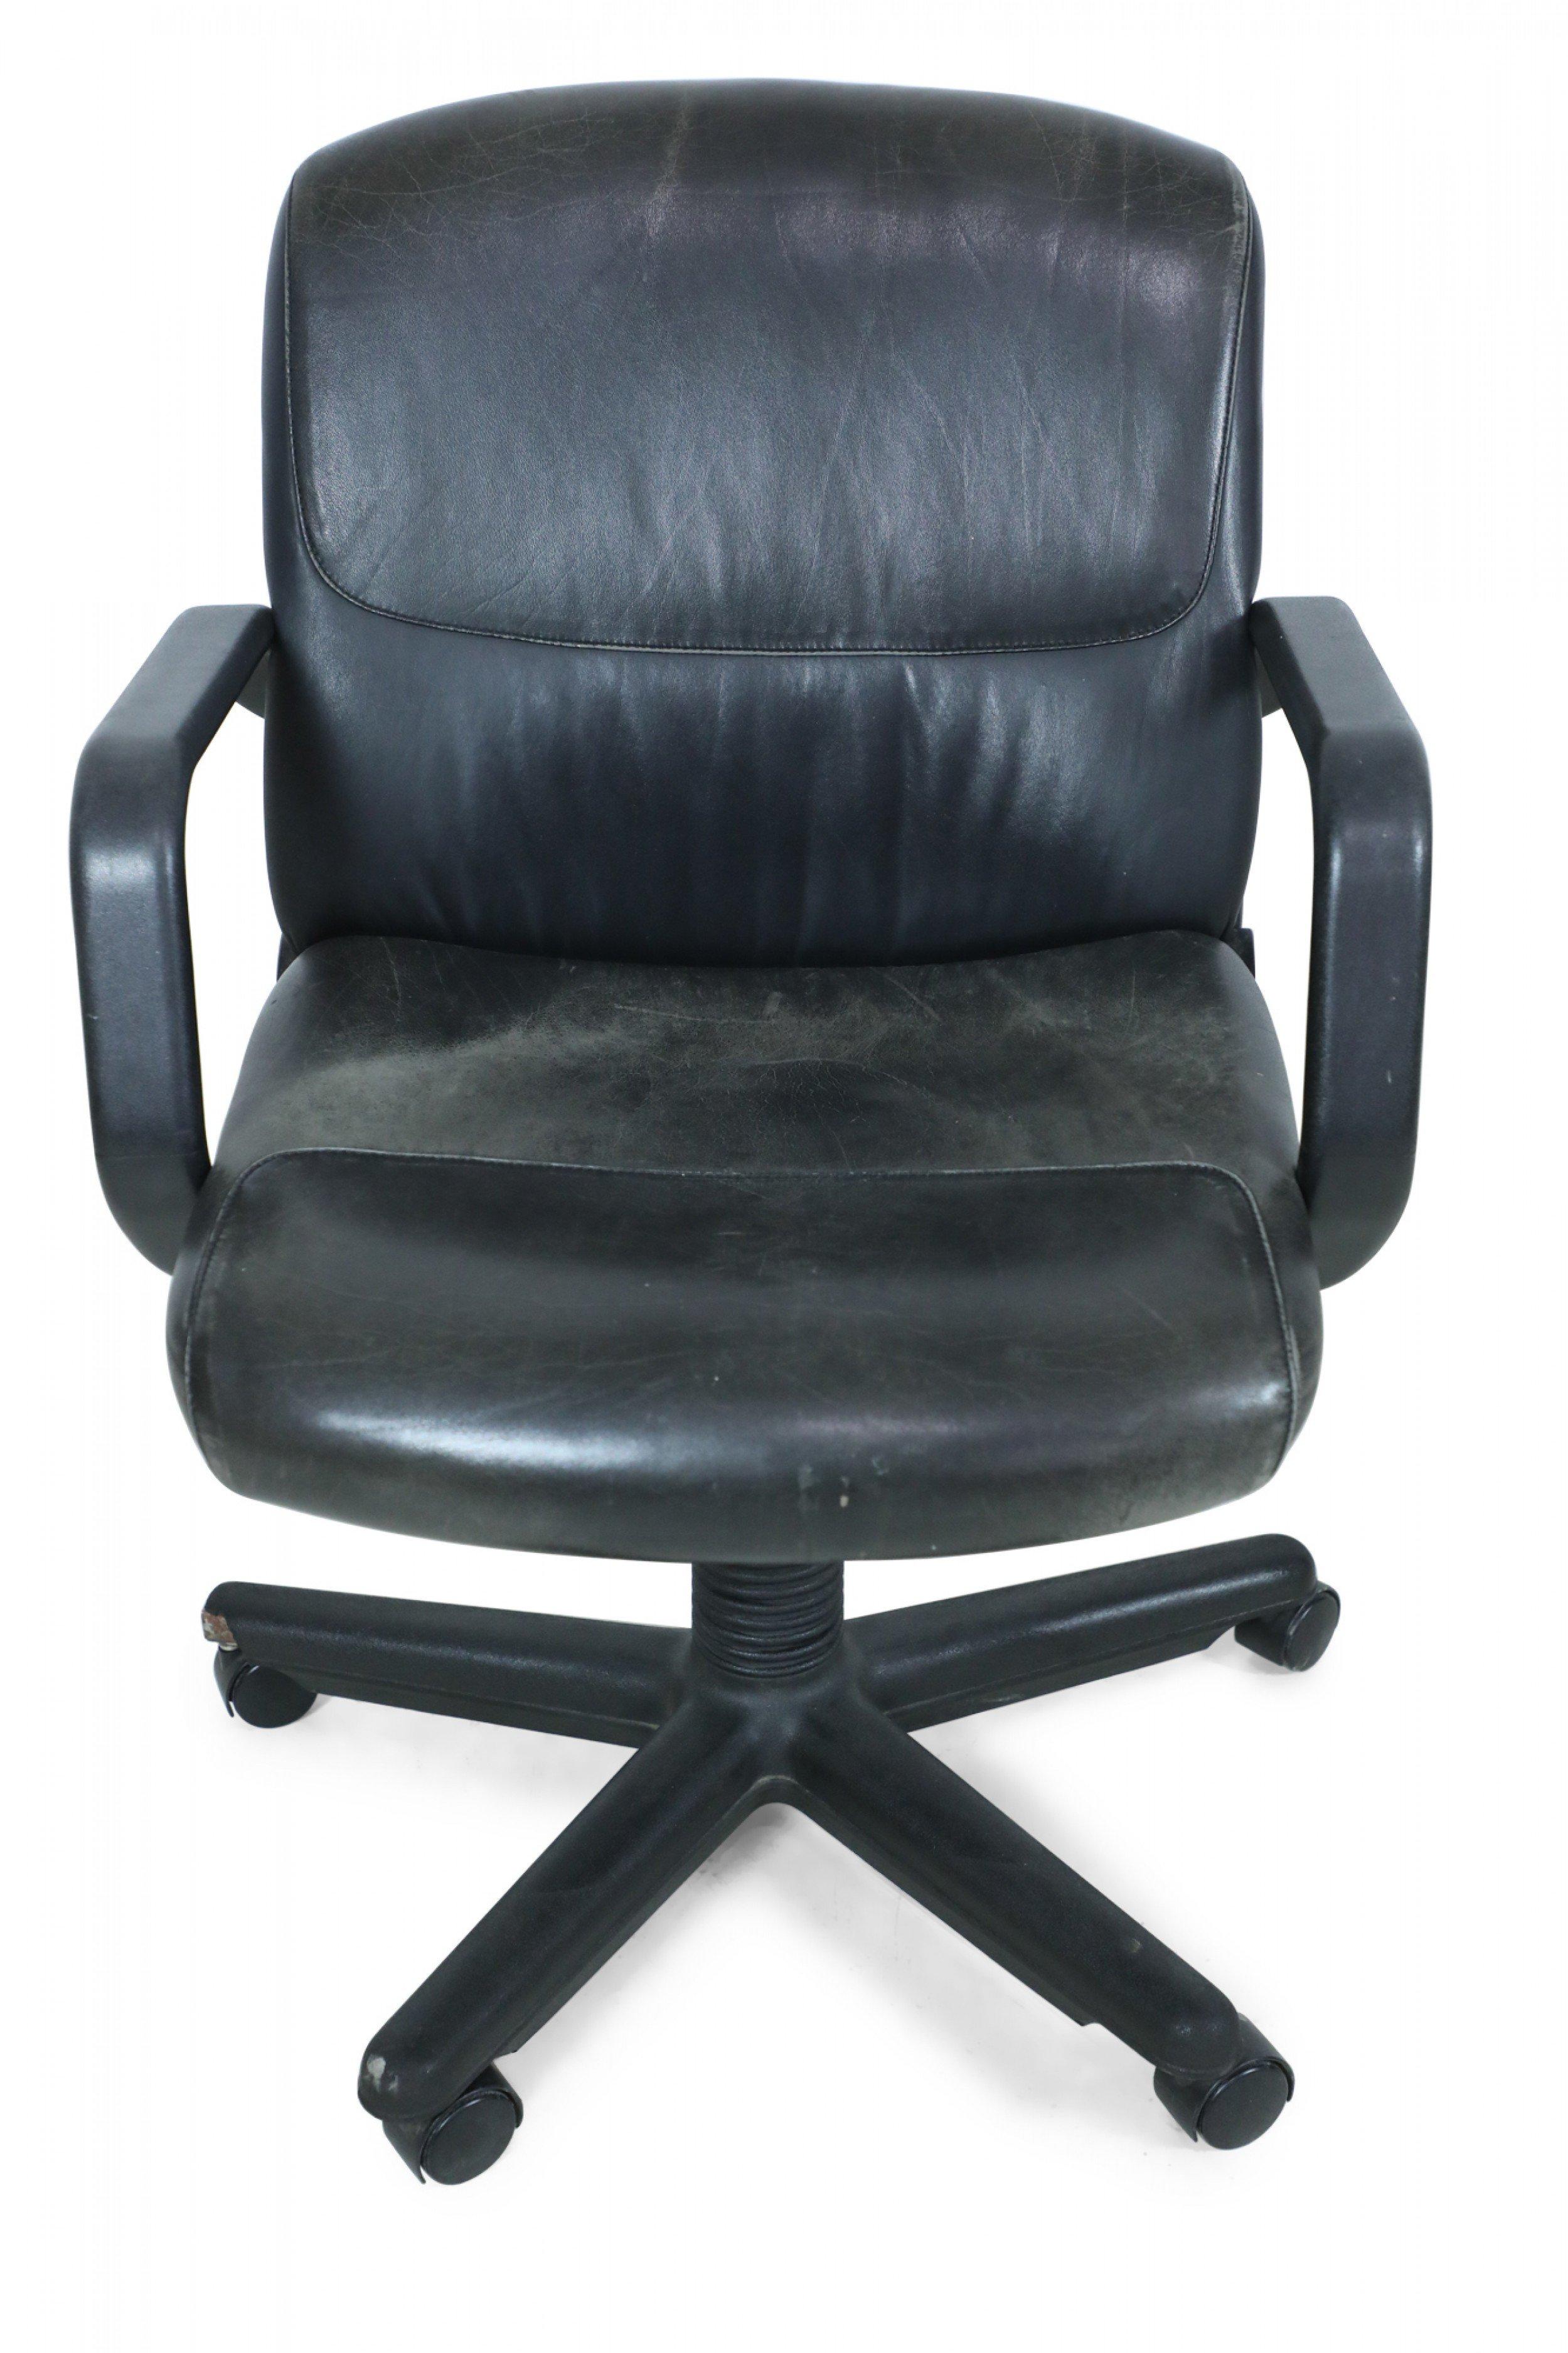 drabert office chair